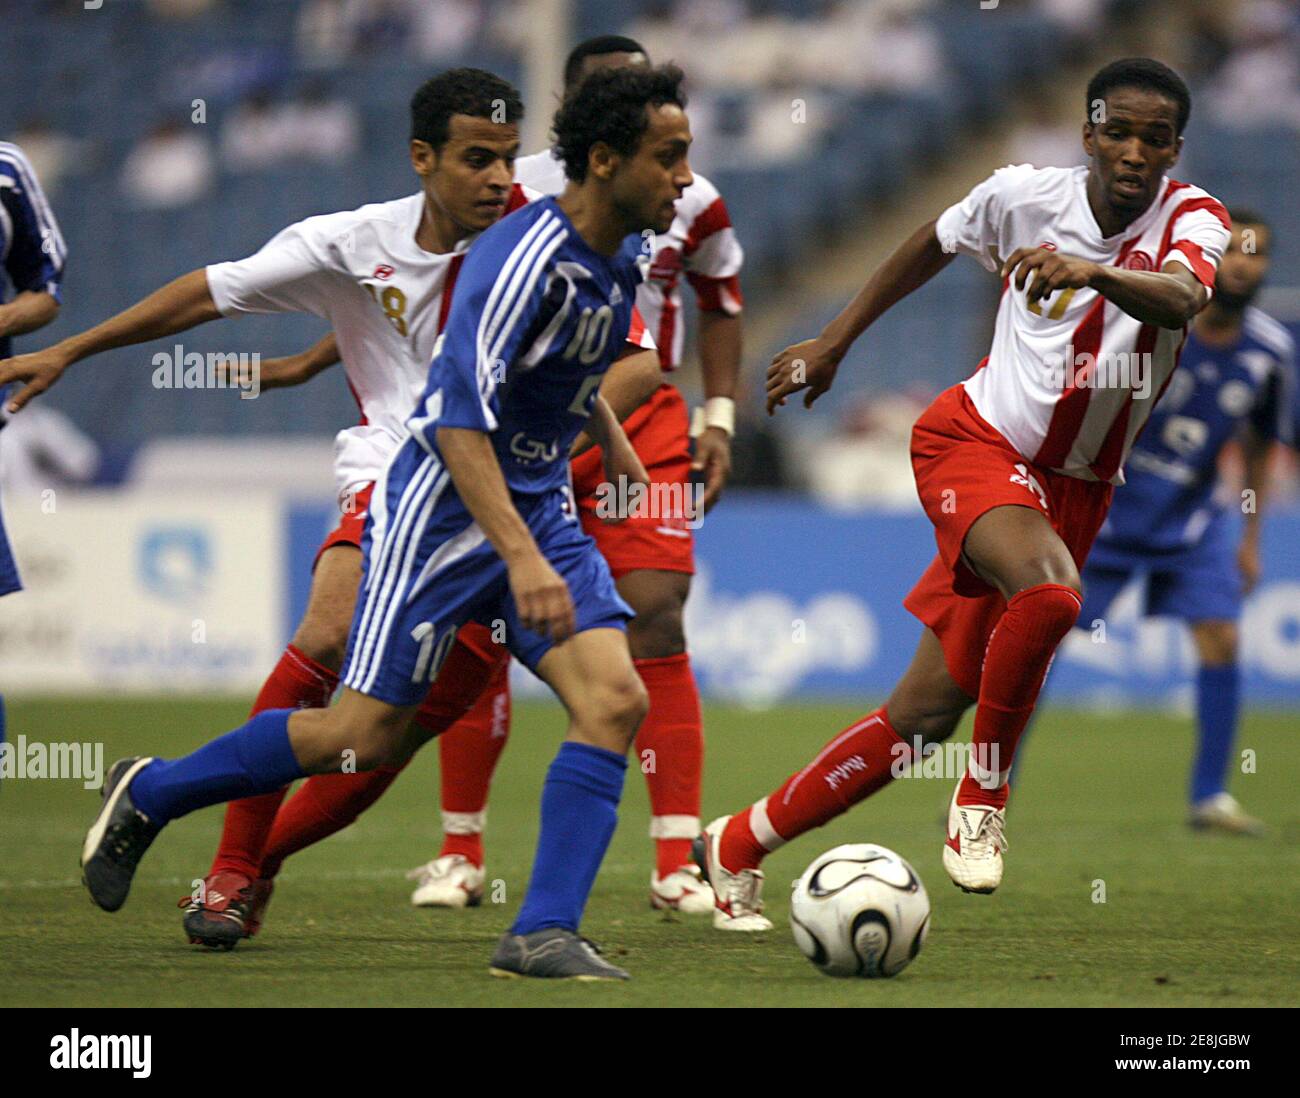 Muhammad al-Shlhoob (C) d'Al Hilal lutte pour le ballon avec Sulieman Amido (R) d'Al Wehda et Sultan al-Lehiani lors de leur match de football saoudien de qualification à la coupe du Roi Abdullah à Riyad le 19 avril 2008. REUTERS/Fahad Shadeed (ARABIE SAOUDITE) Banque D'Images